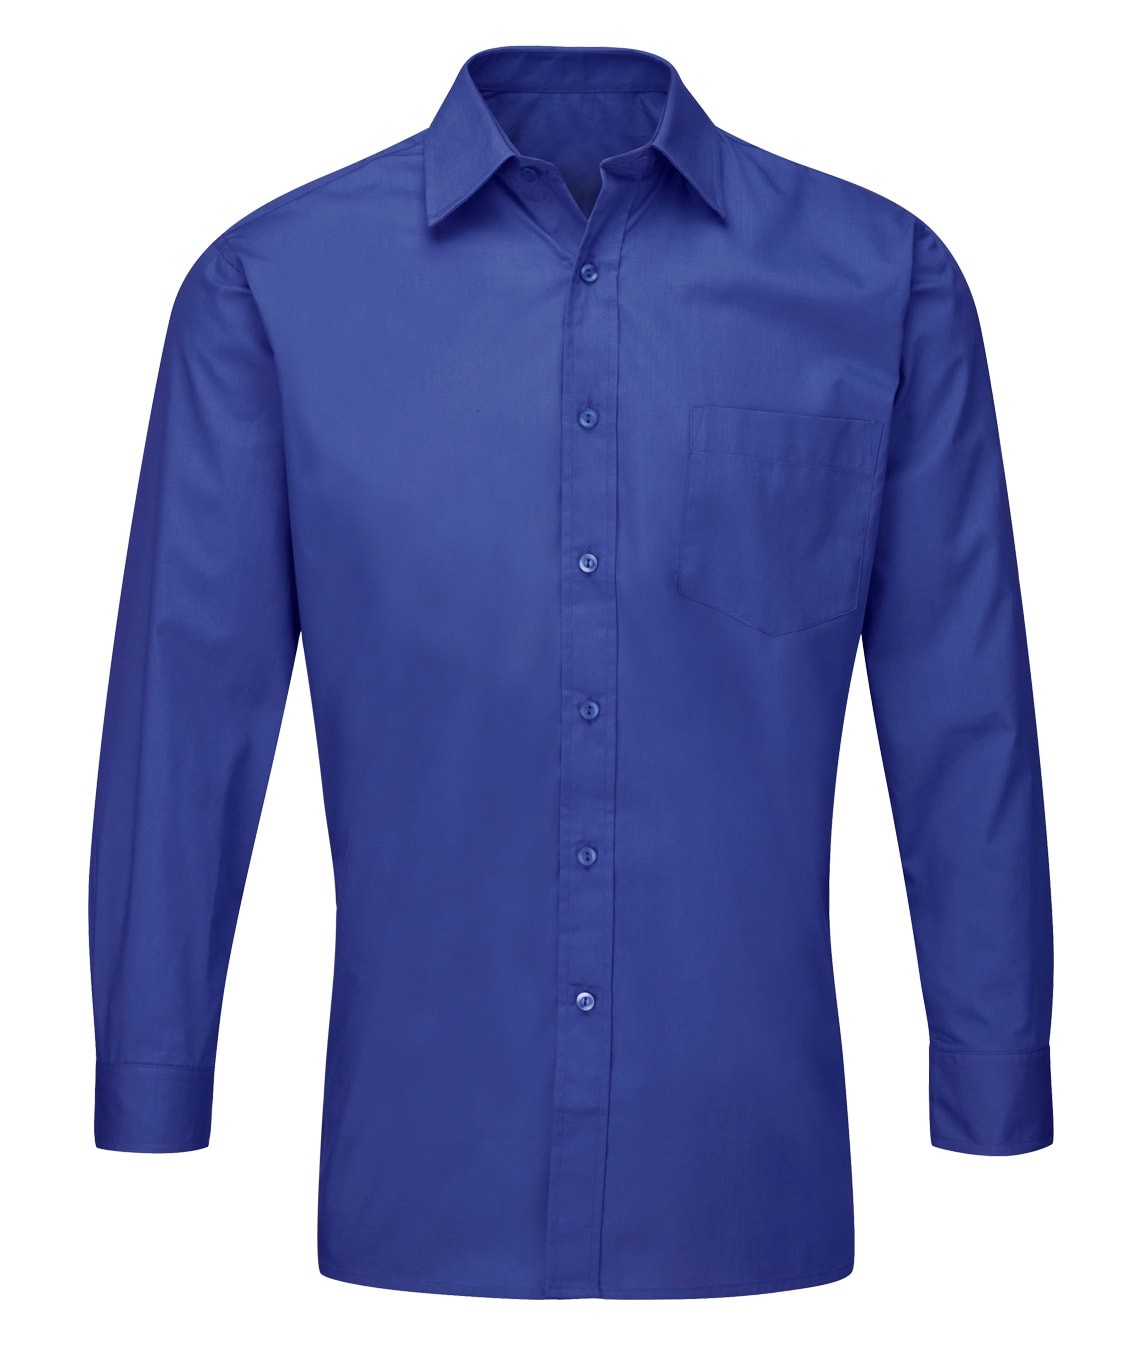 Men's Deluxe: Long Sleeve Shirt